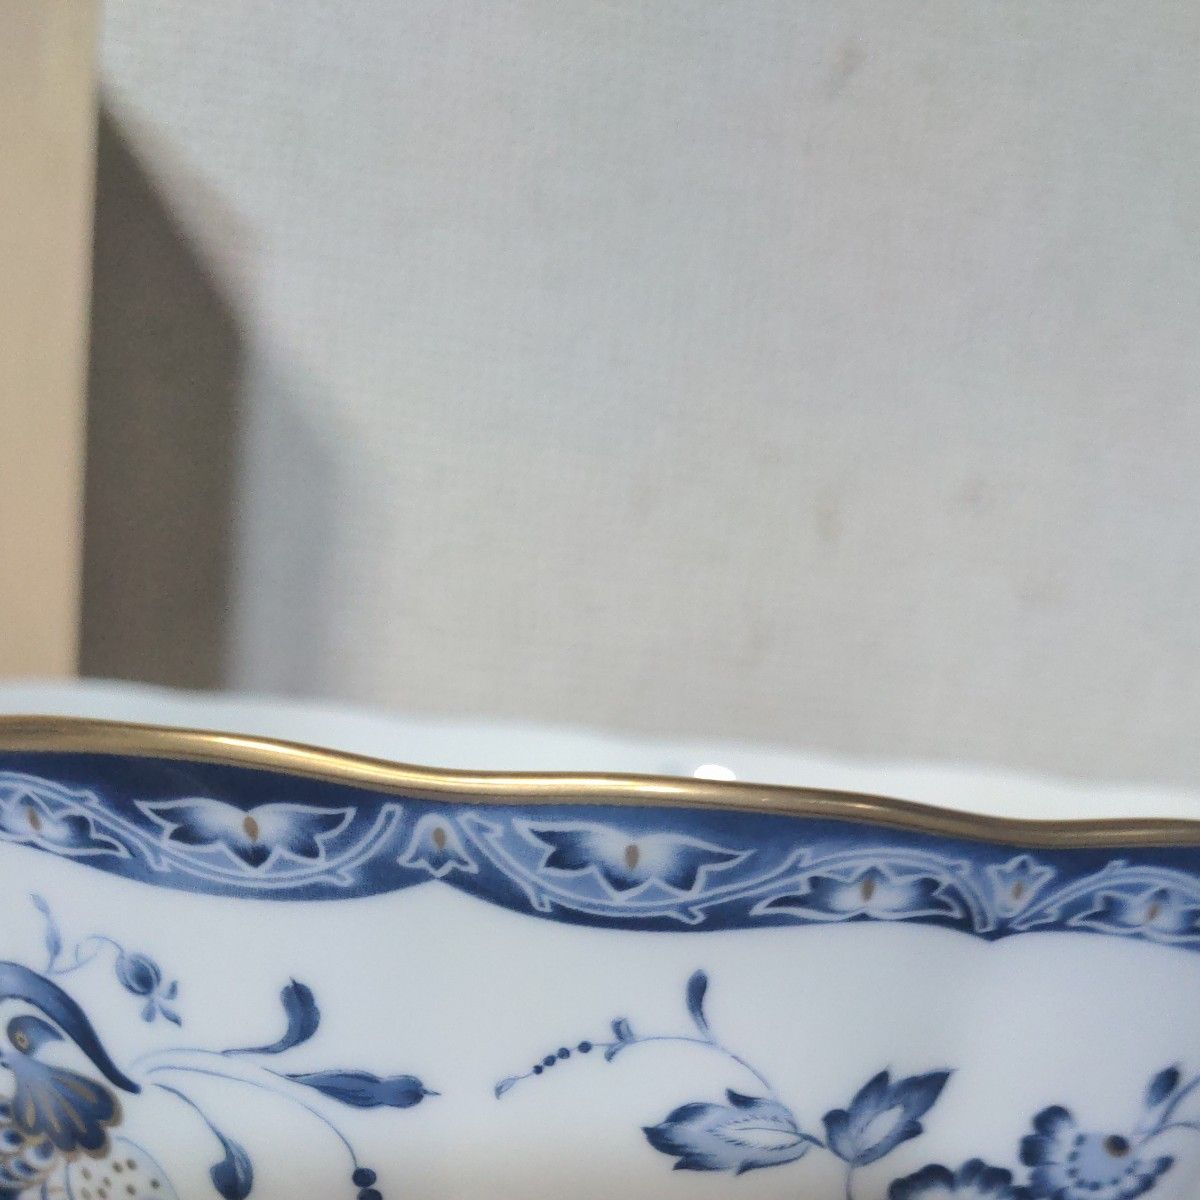 NARUMI Born  China　 金彩ボウル　絵柄はアネモネ、風船かずら、 菊花の金彩青絵 皿幅20C  高さ9.5C 